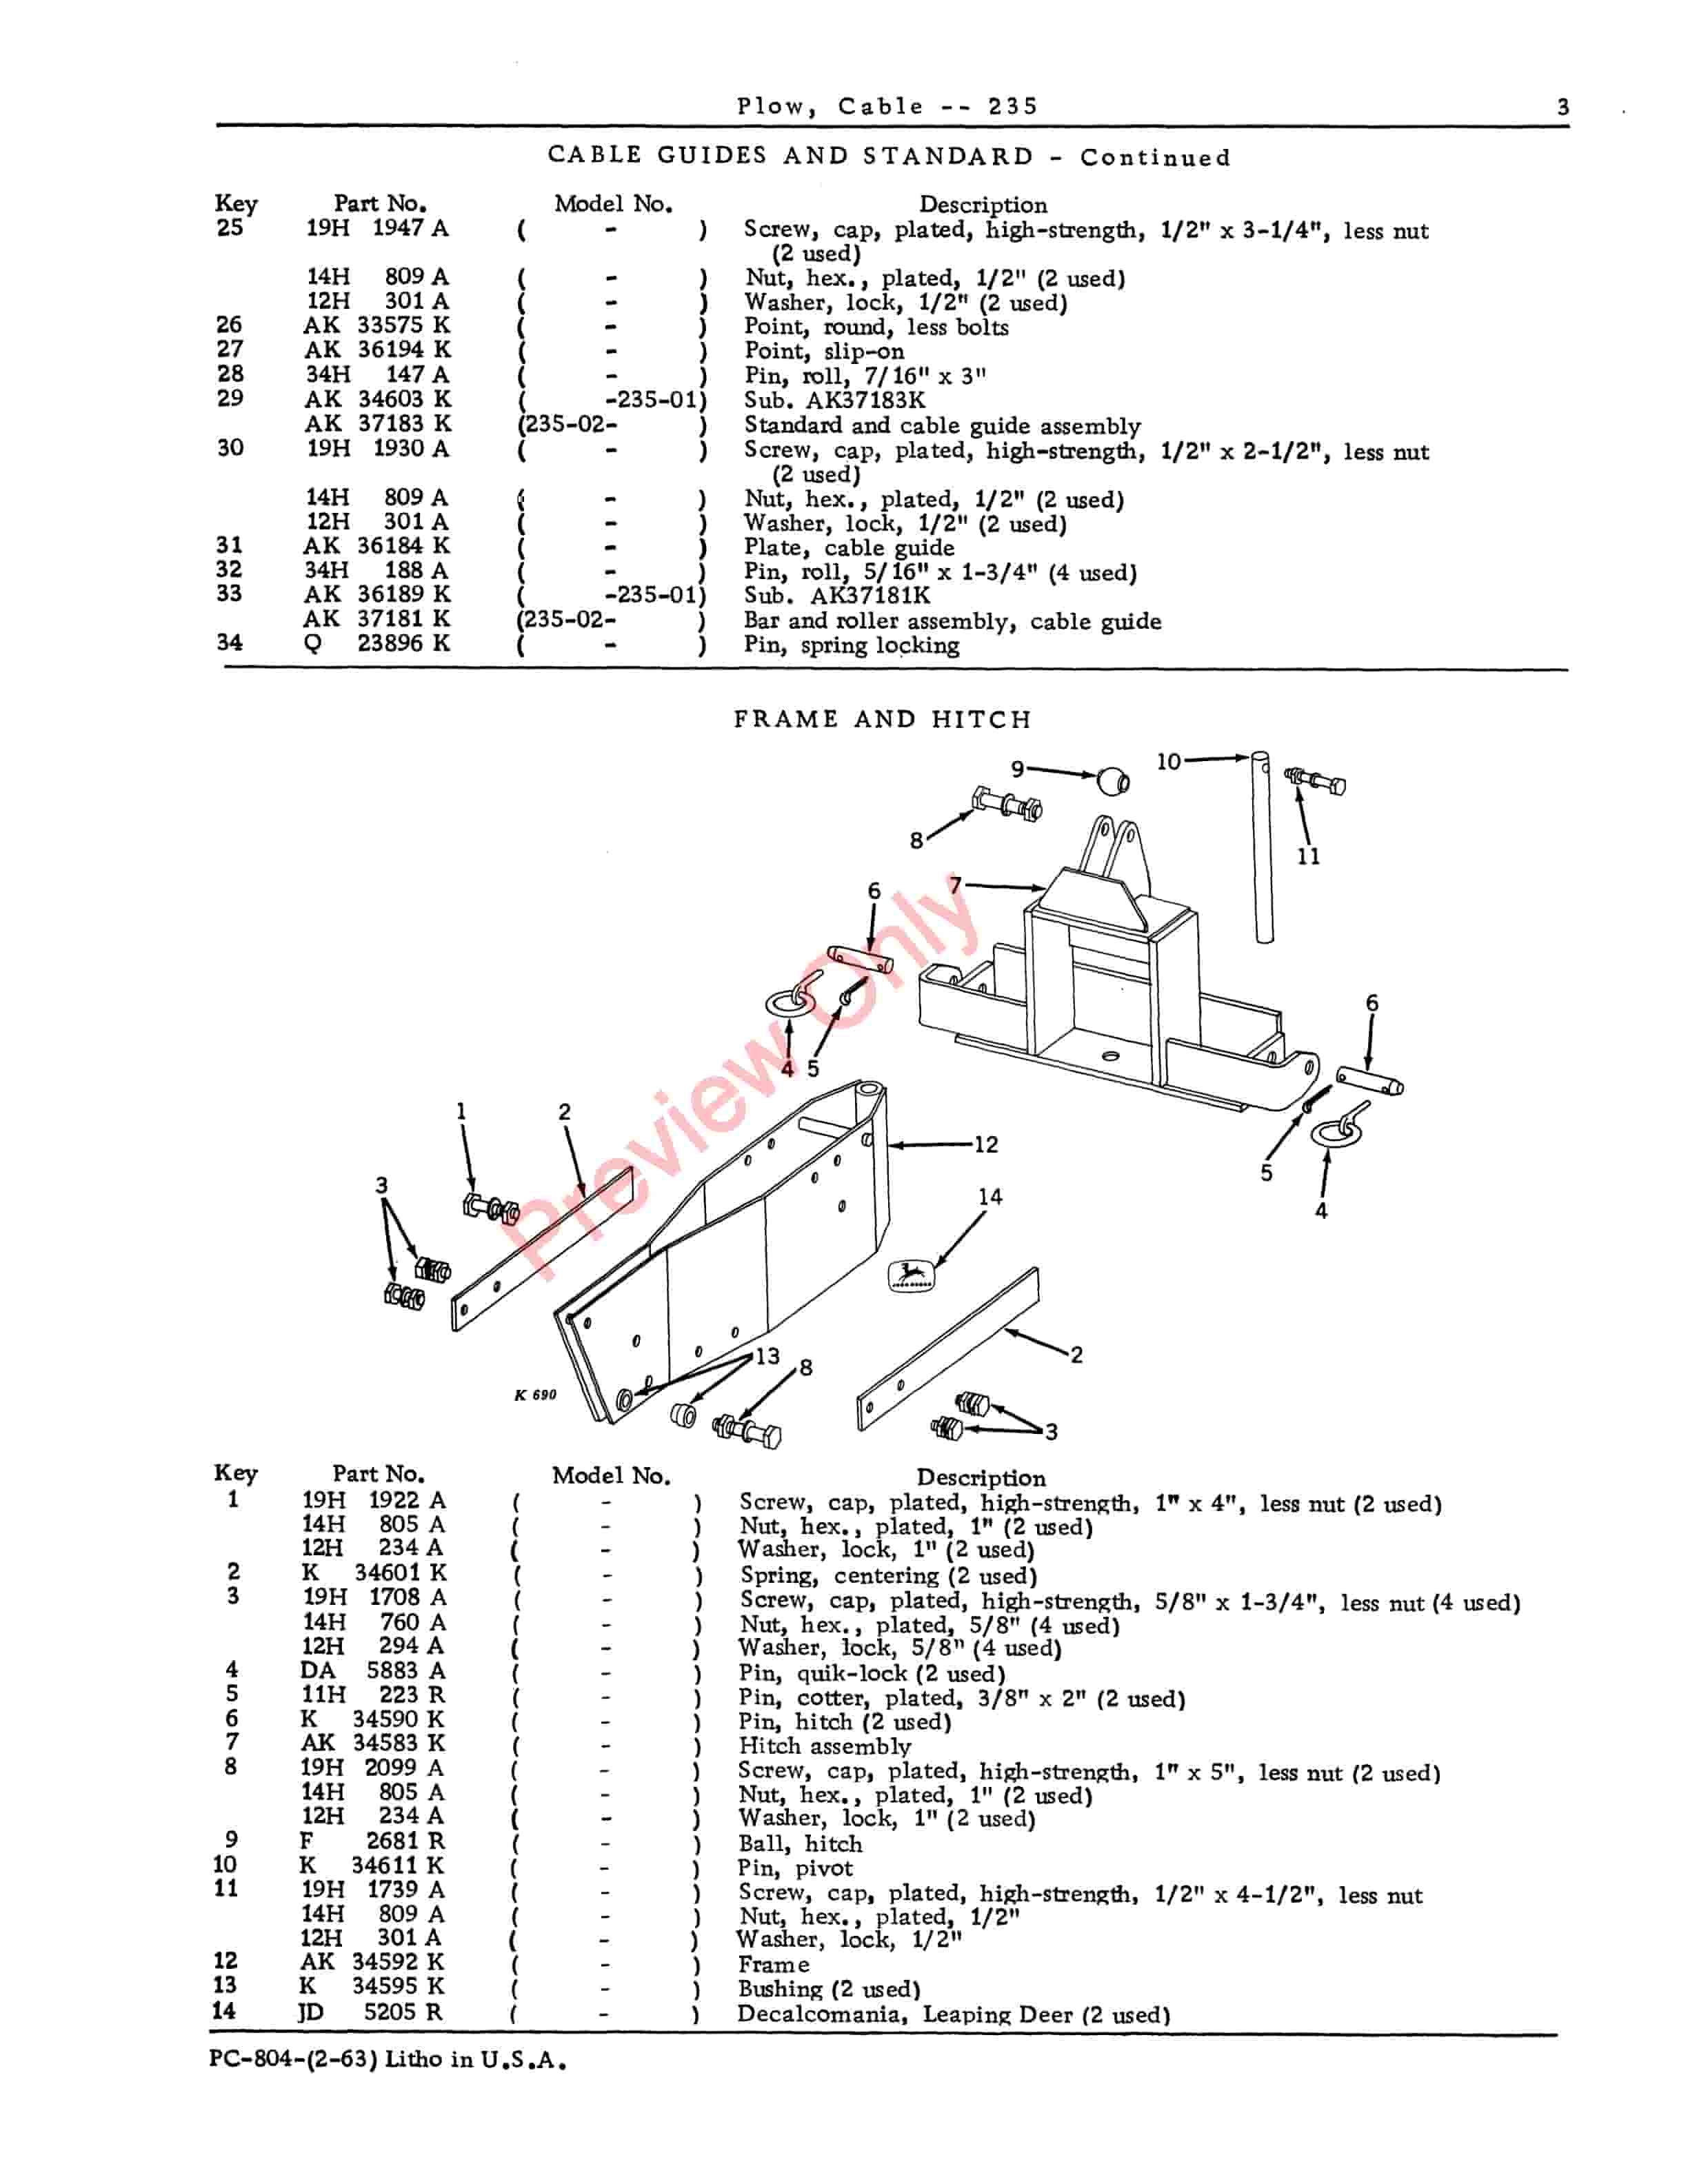 John Deere 235 Cable Plow Parts Catalog PC804 01FEB63-5